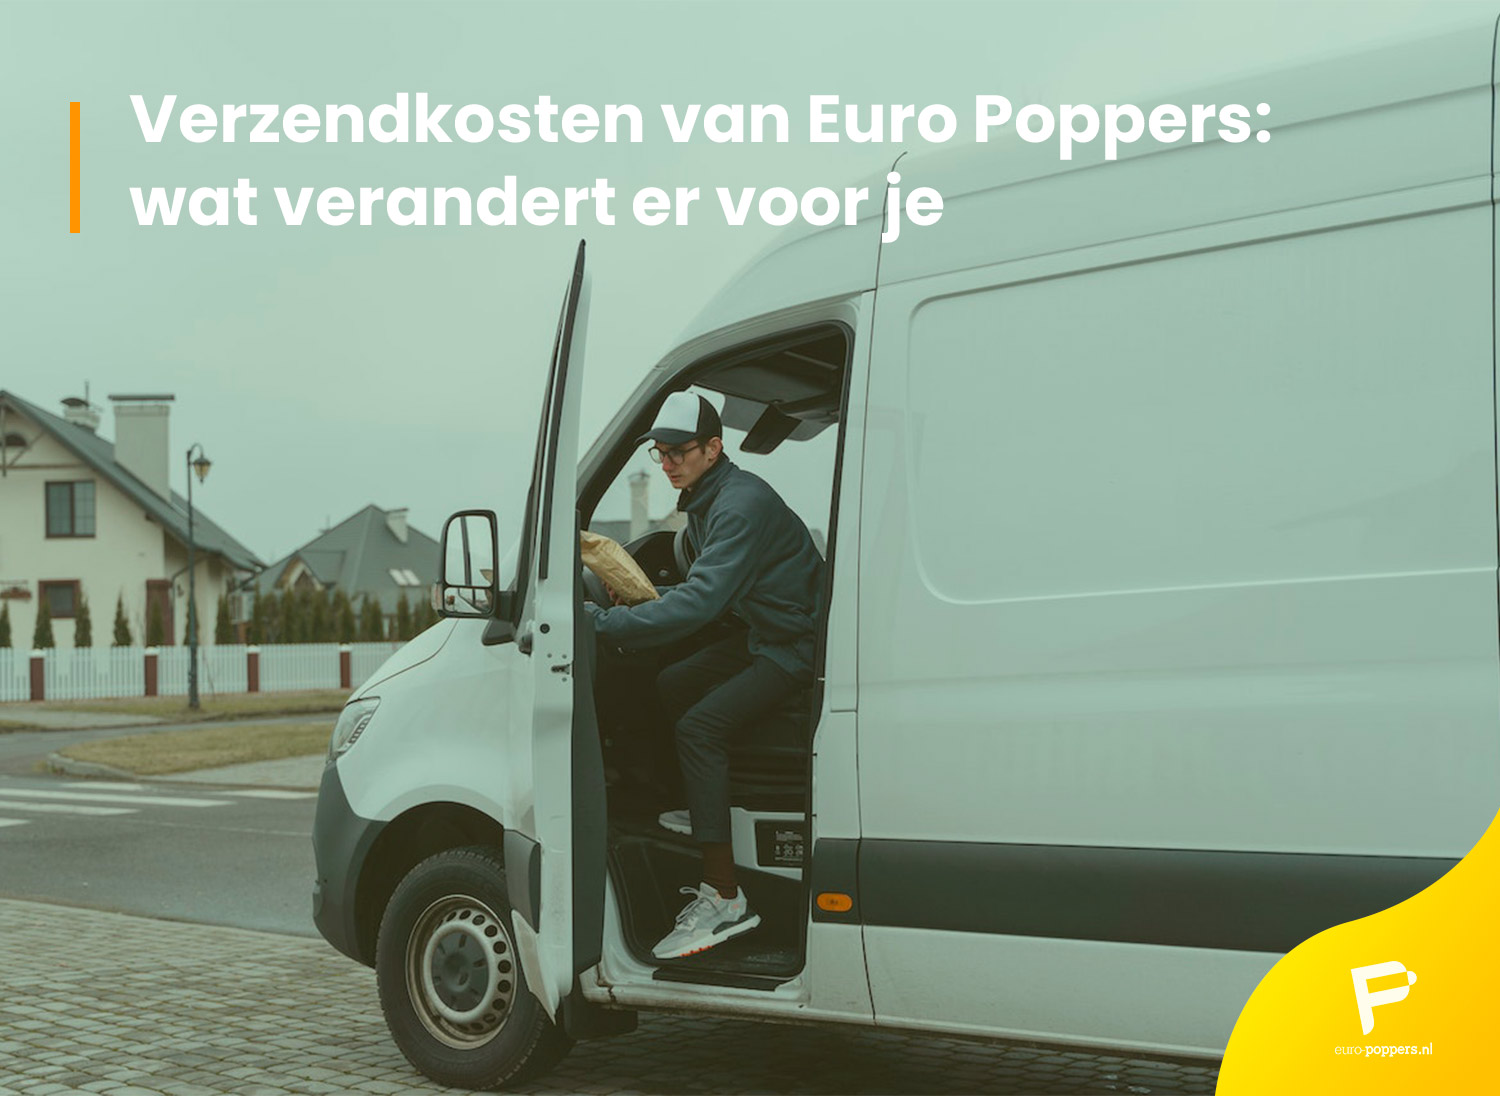 Je bekijkt nu Verzendkosten van Euro Poppers: wat verandert er voor je